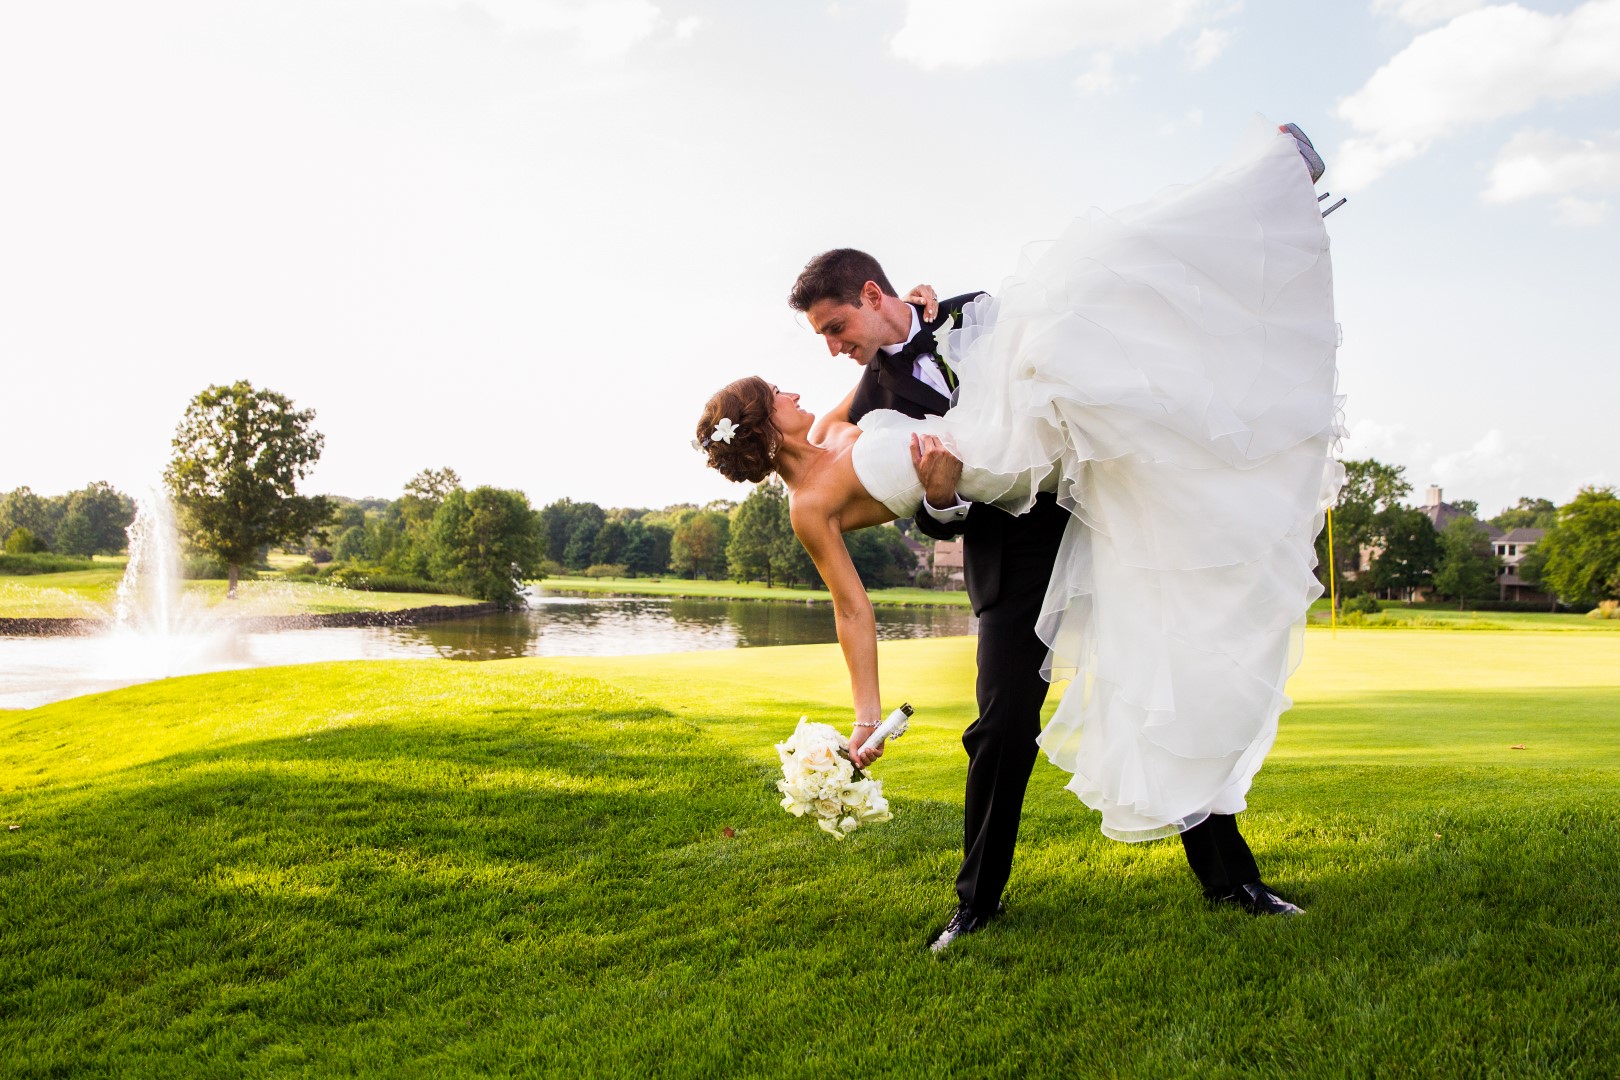 latest wedding photo pose ideas for couple /wedding photoshoot pose/wedding  poses for bride & groom - YouTube